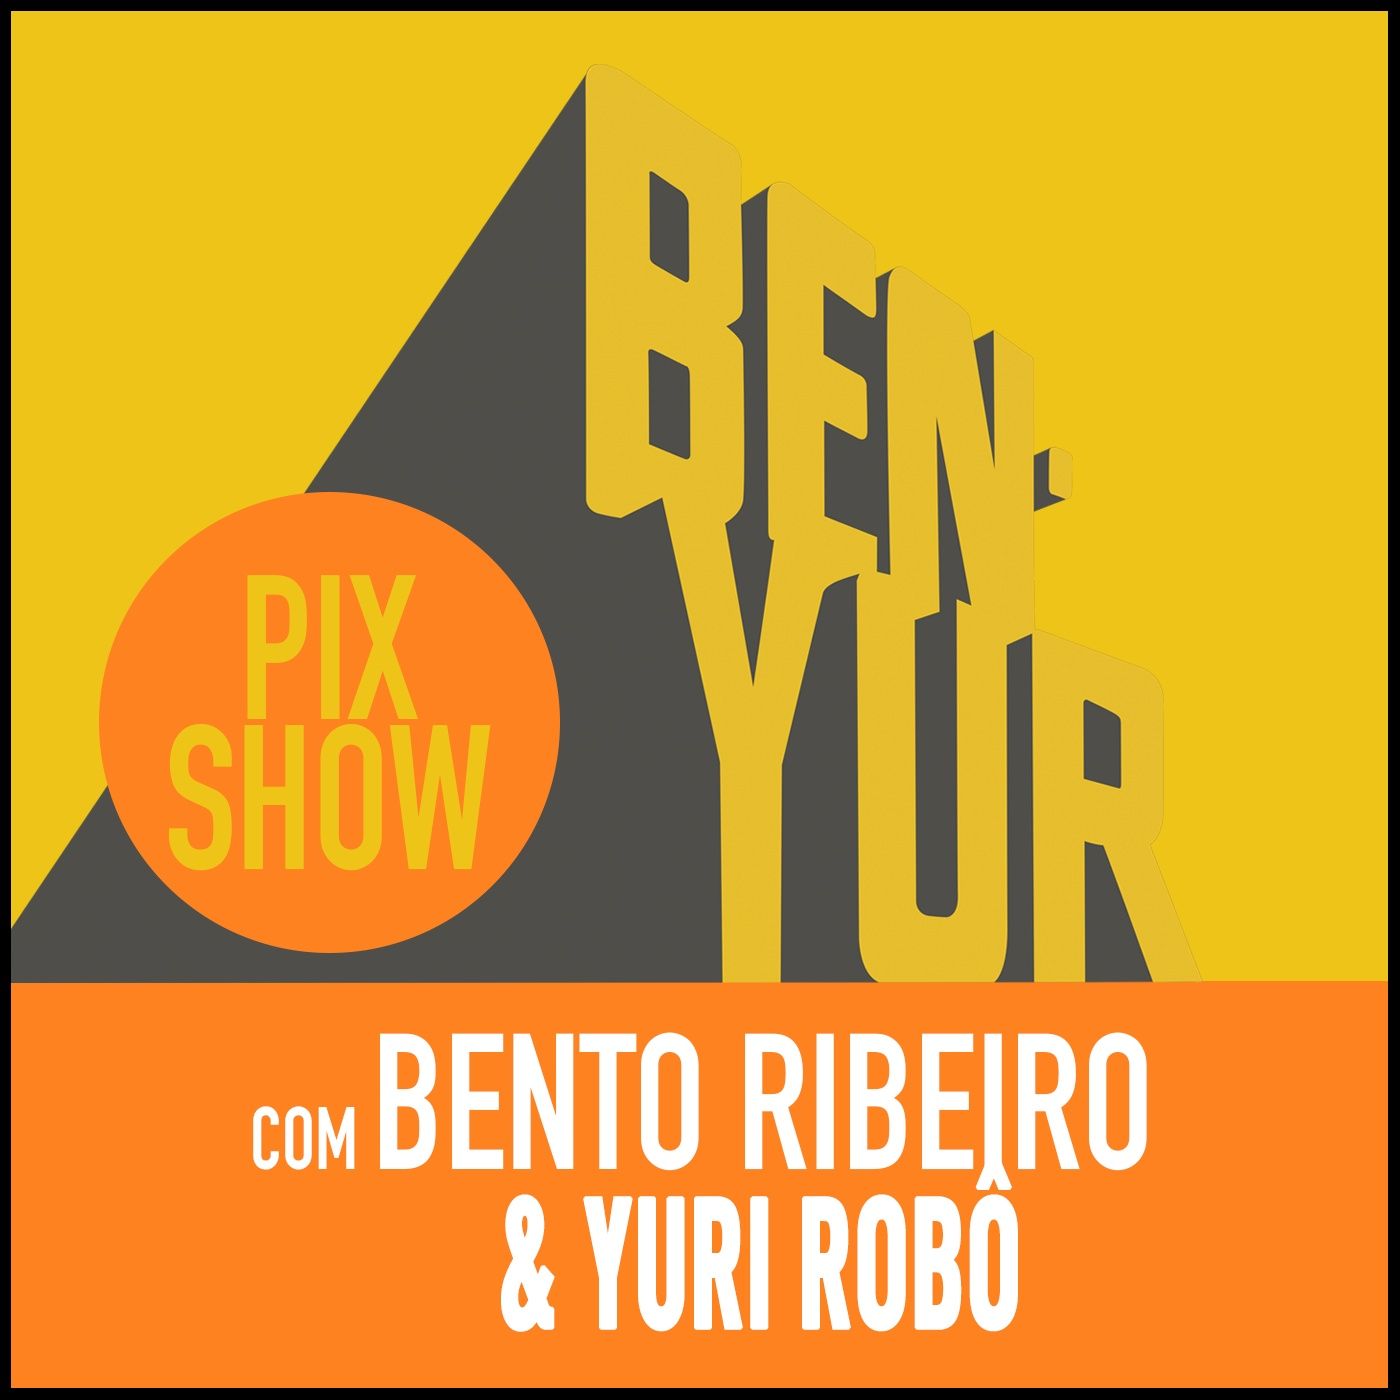 BEN-YUR PIXSHOW #089 com Bento Ribeiro & Yuri Robô